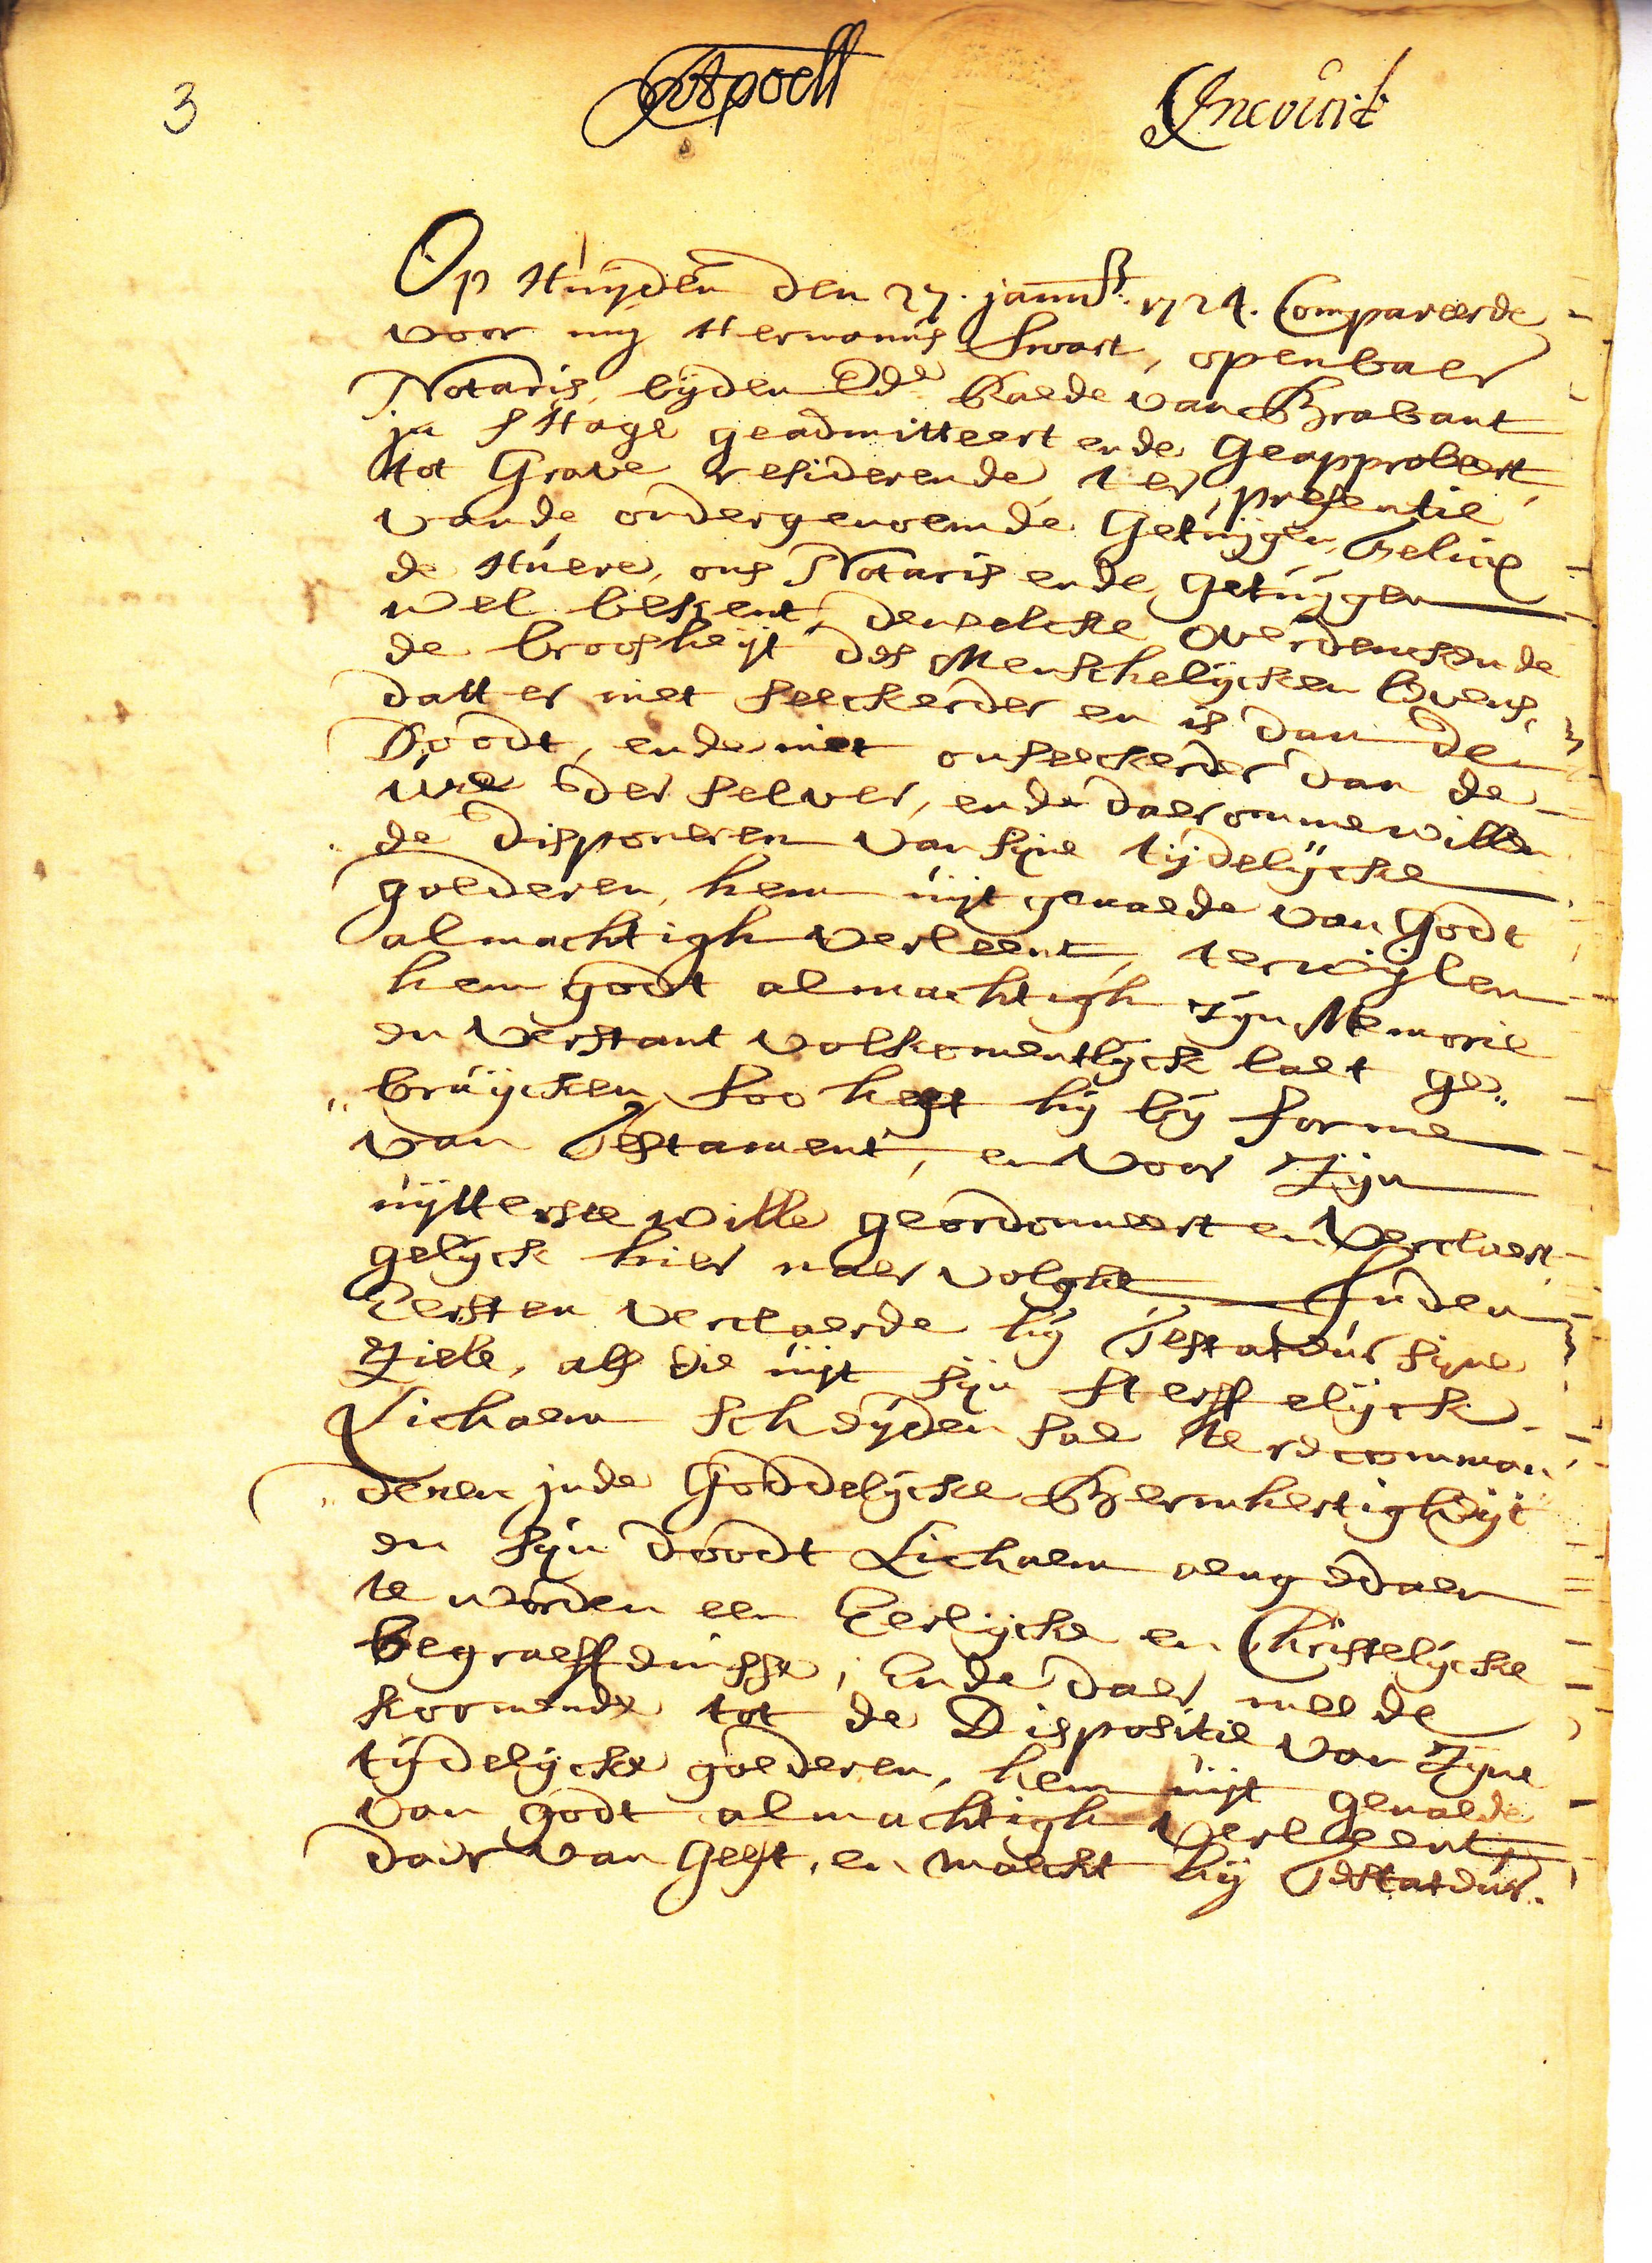 Notarisakte, geschreven op 27 januari 1724 door notaris Hermanus Swart